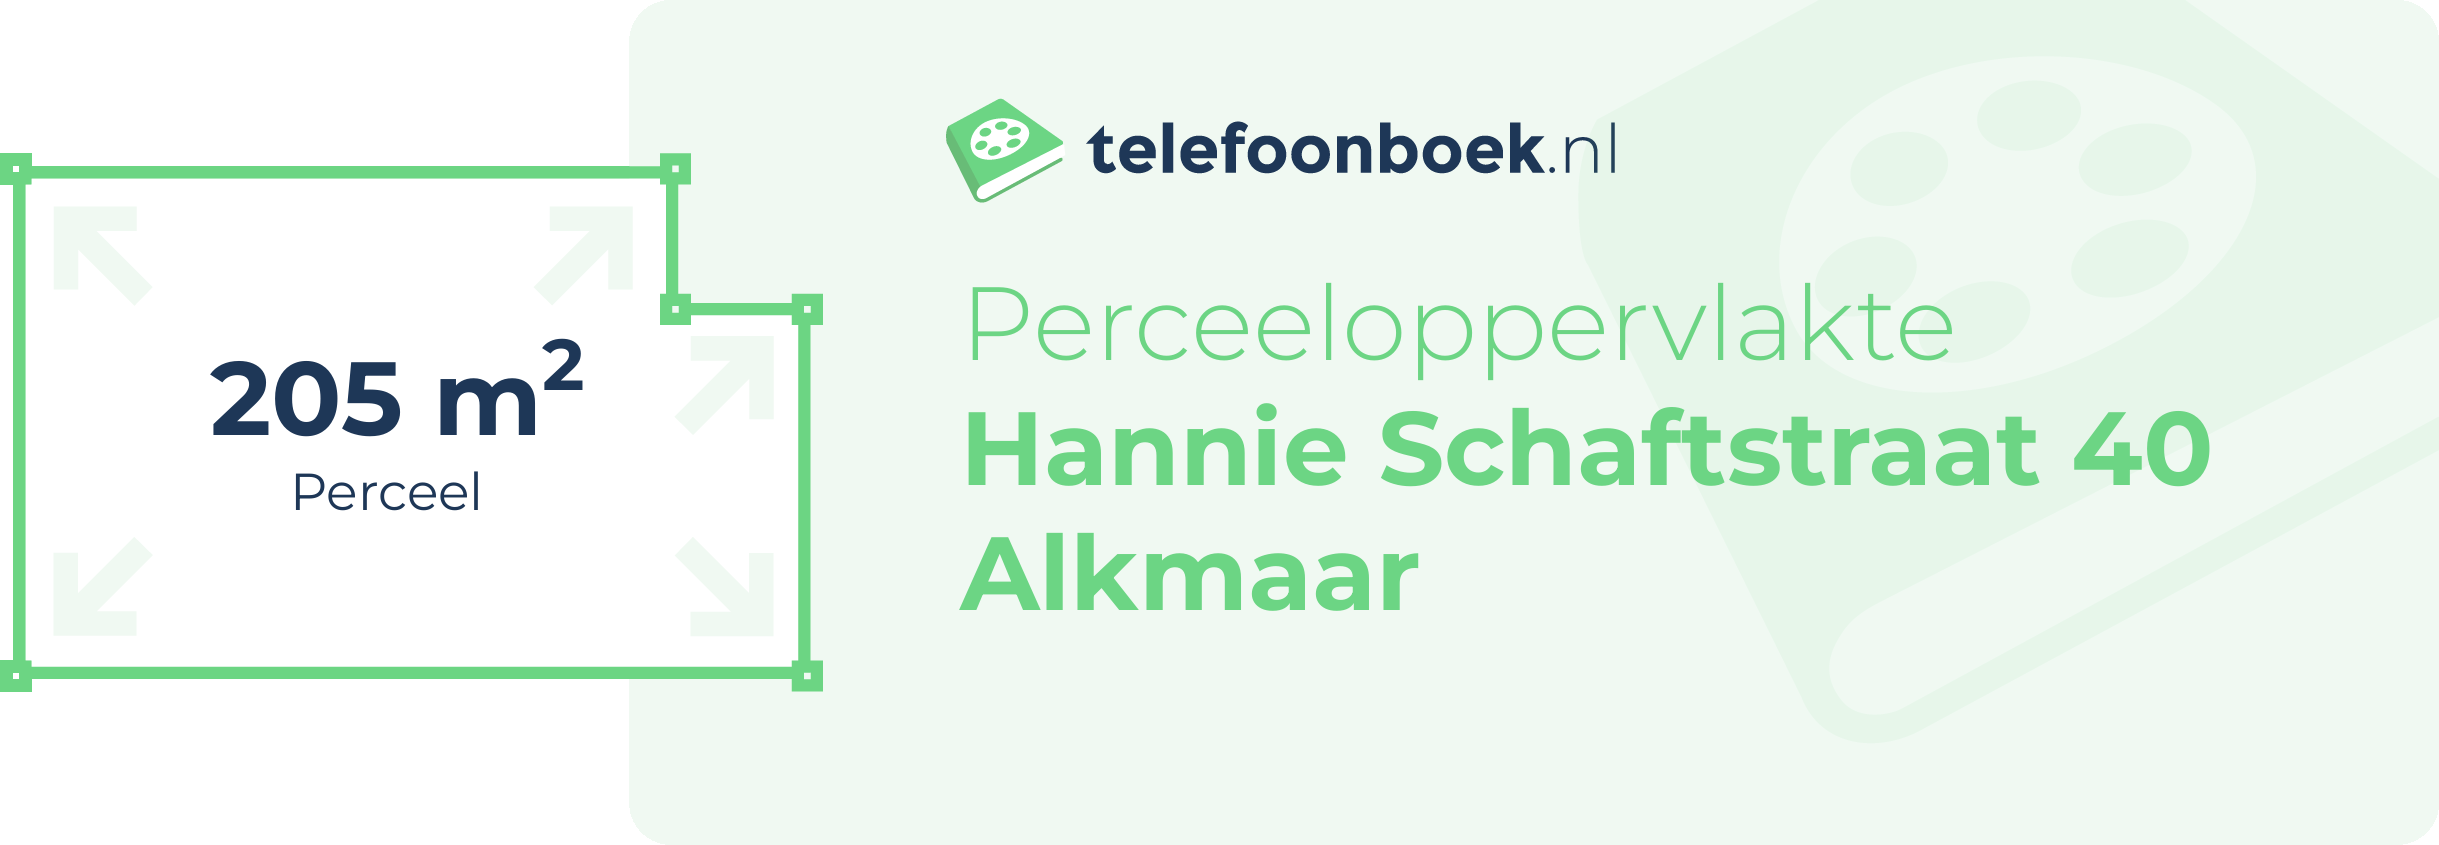 Perceeloppervlakte Hannie Schaftstraat 40 Alkmaar